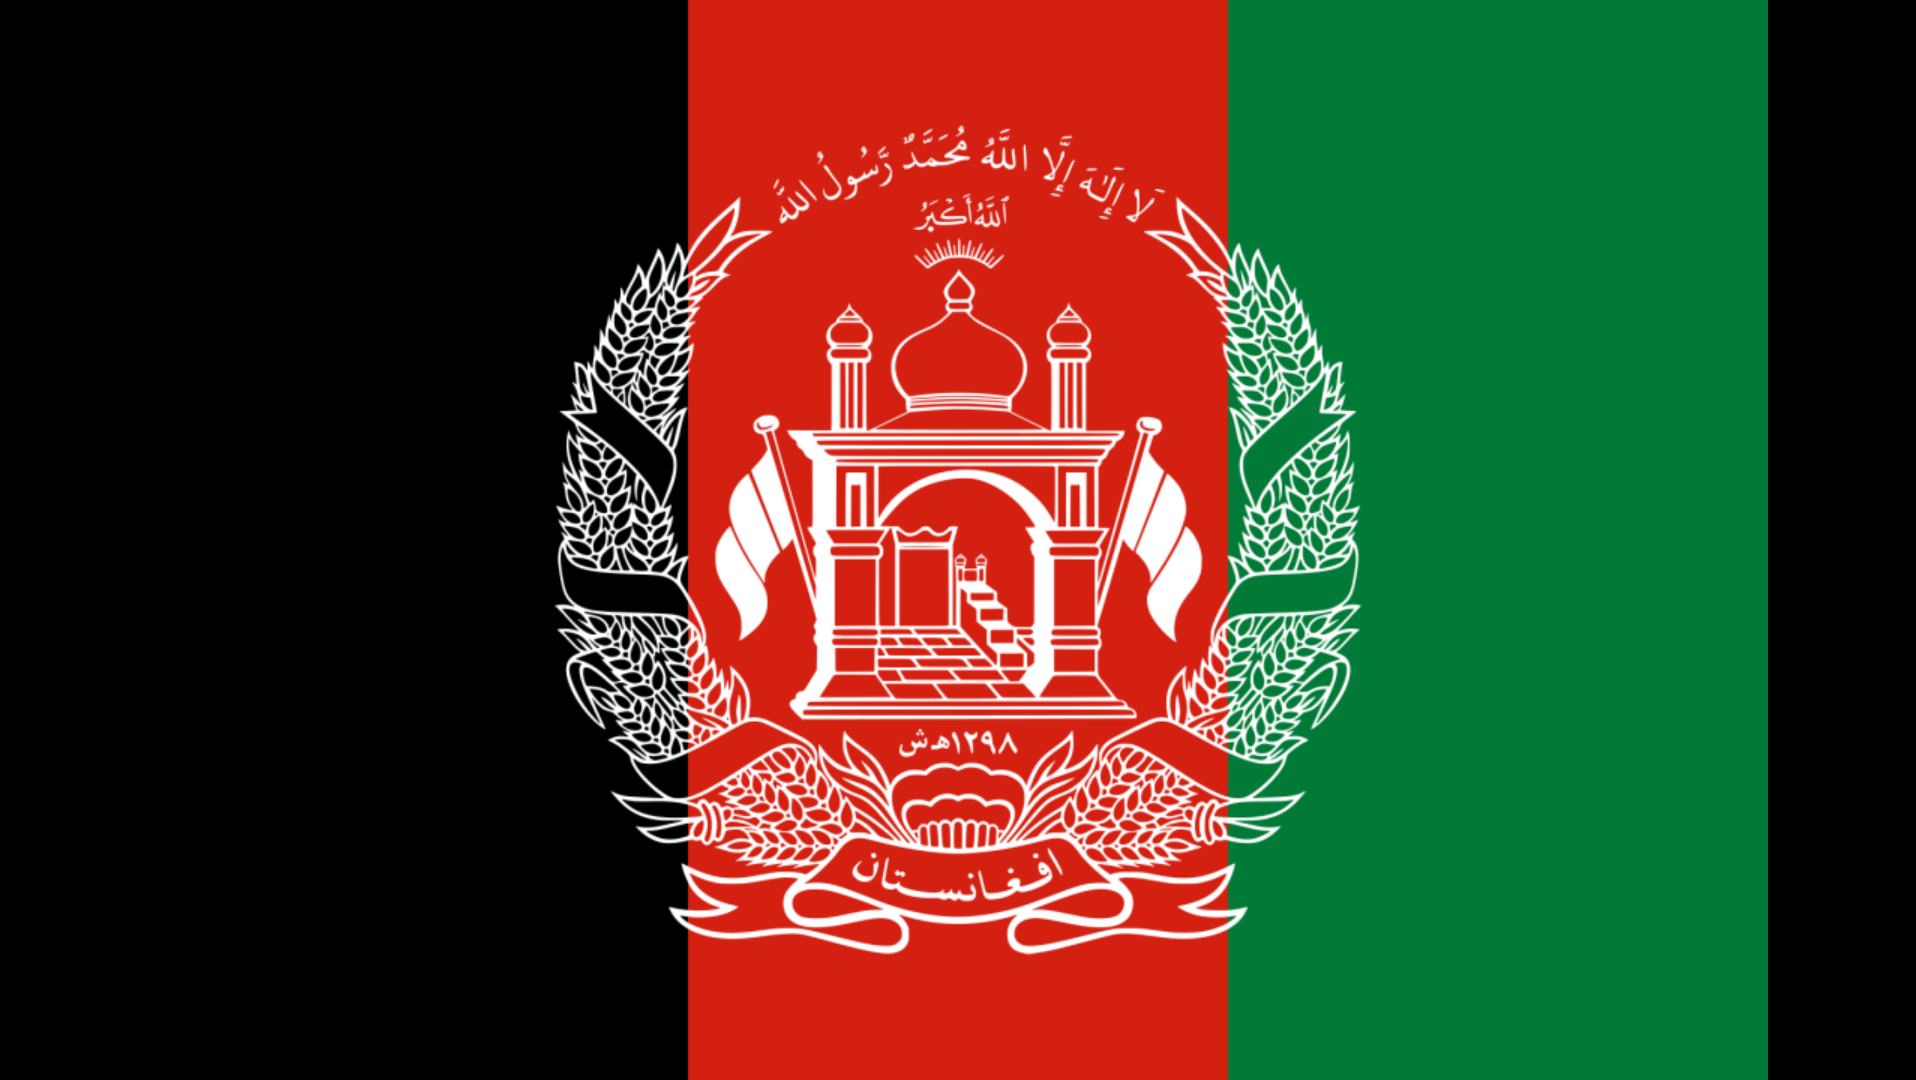 阿富汗以前的国旗图片